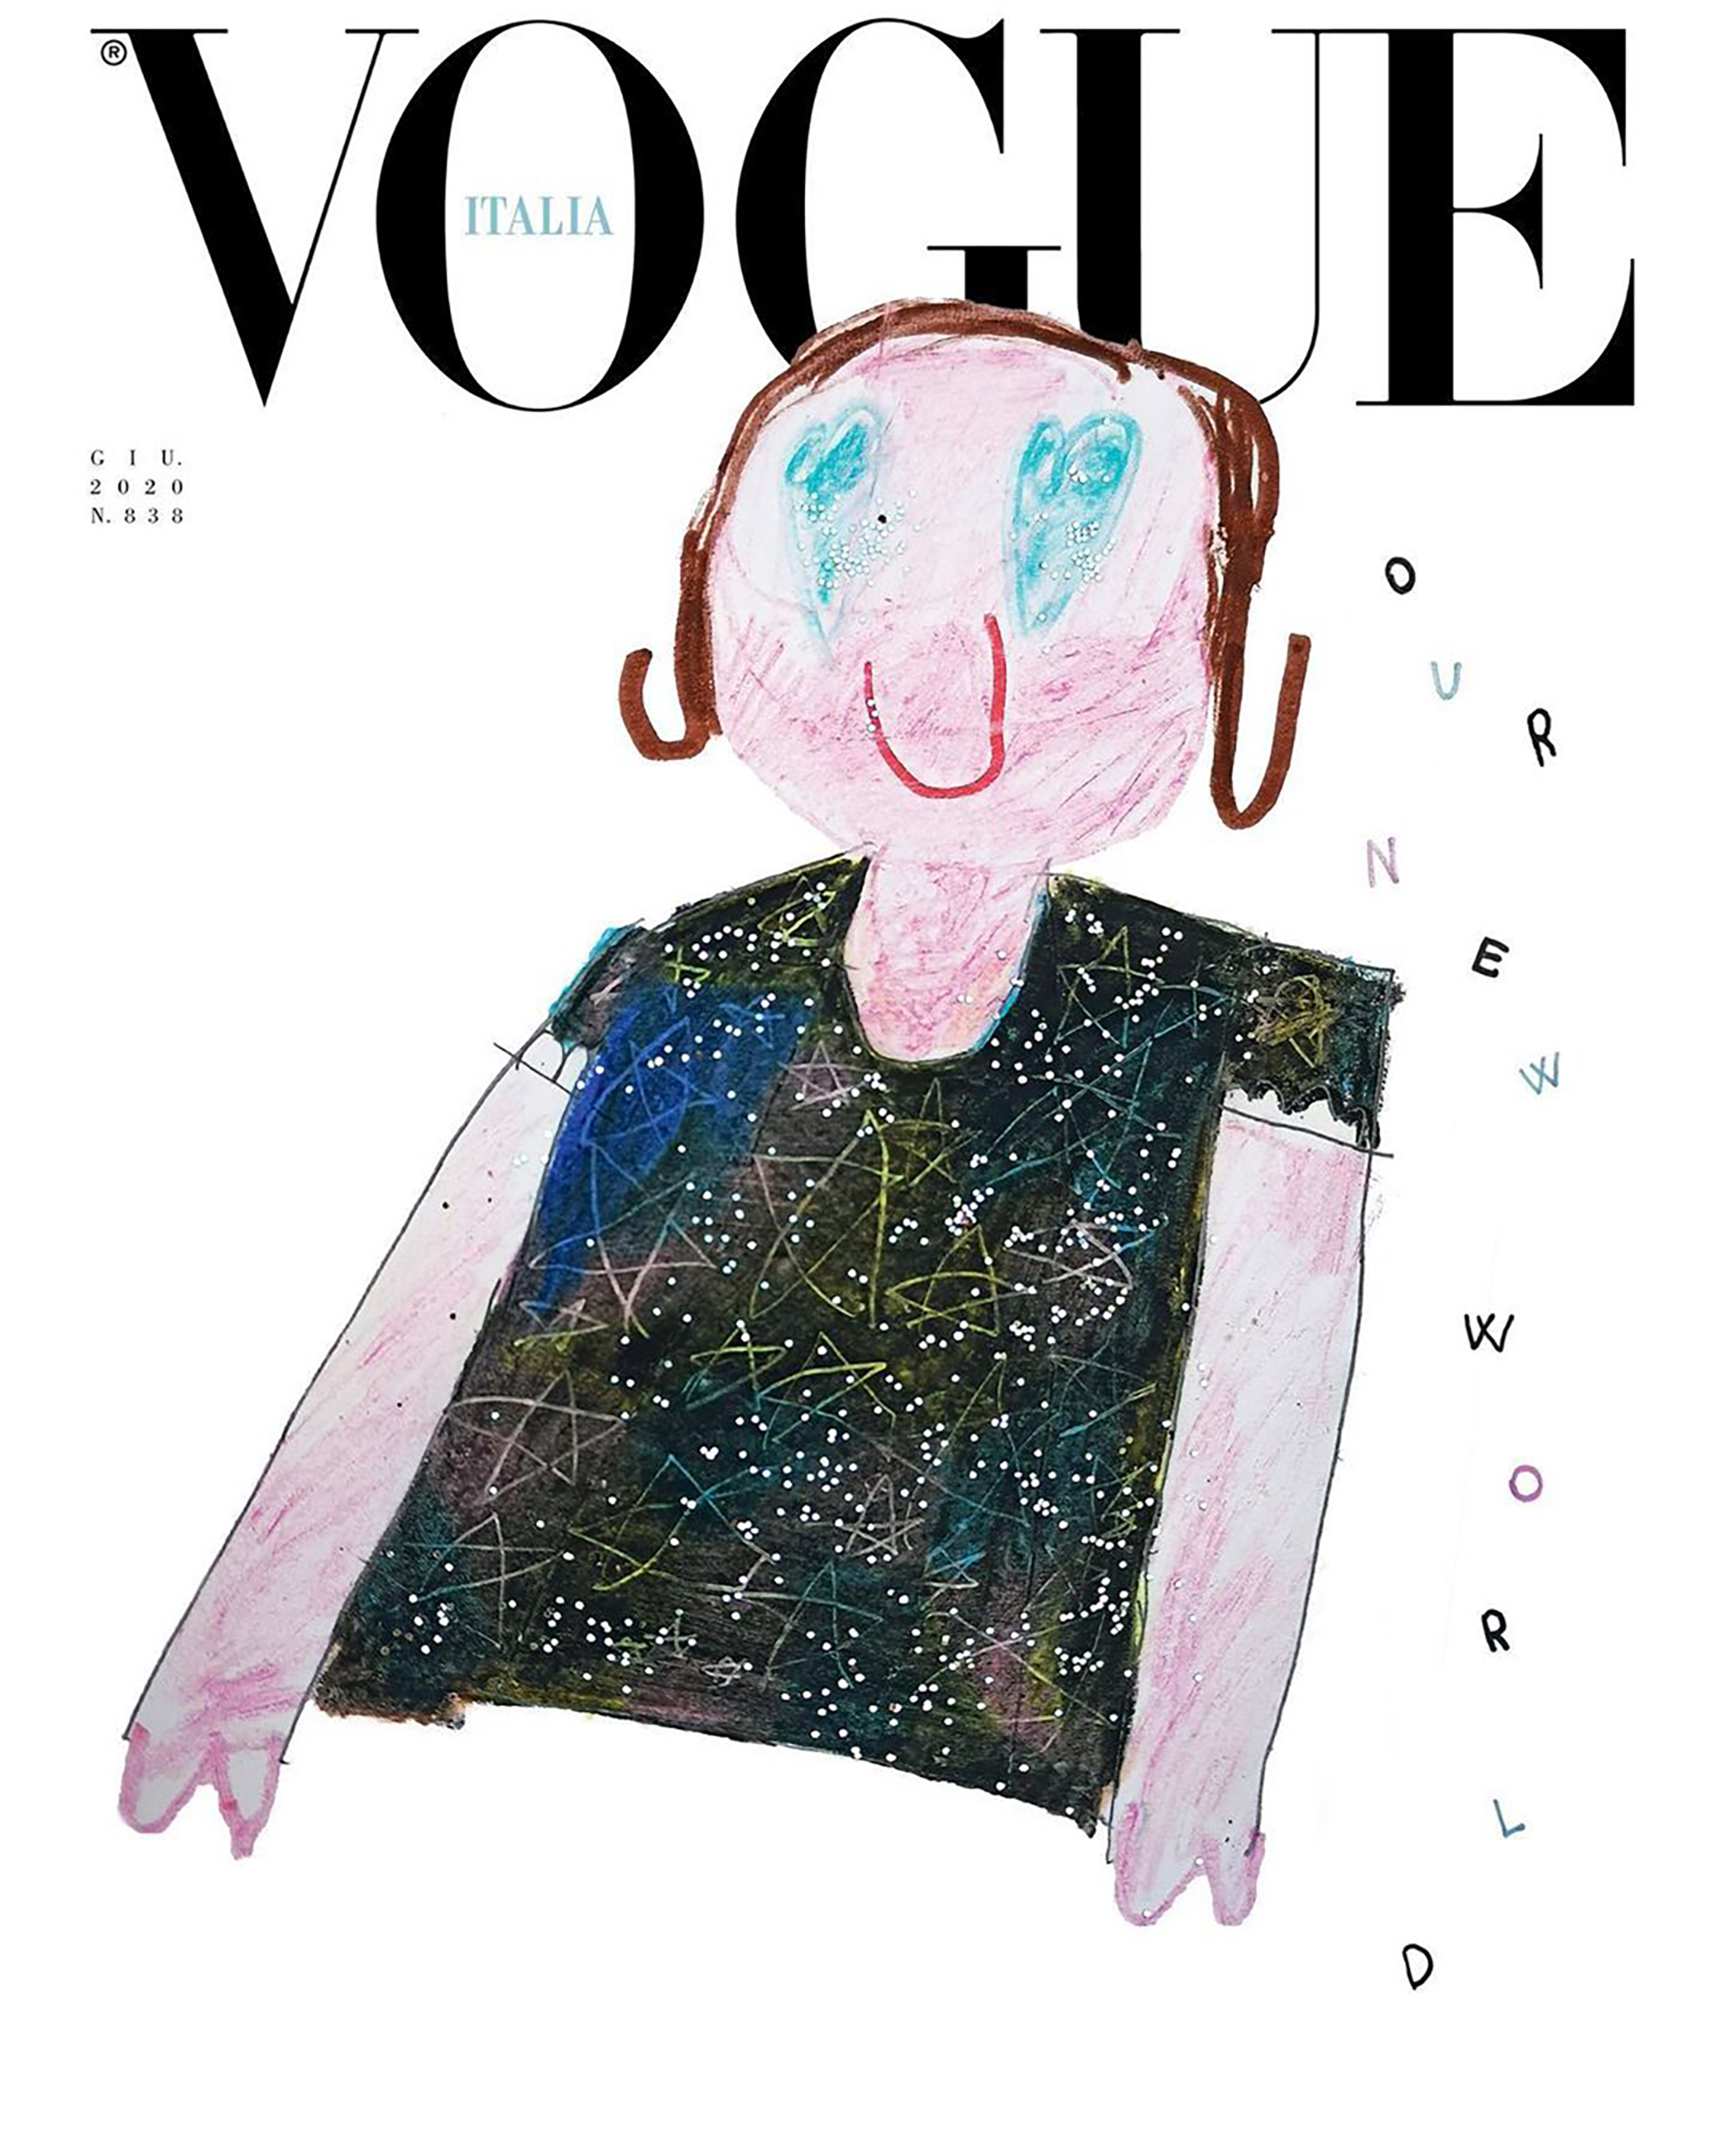 Vogue Italia lanza 8 portadas dibujadas por niños - Infobae